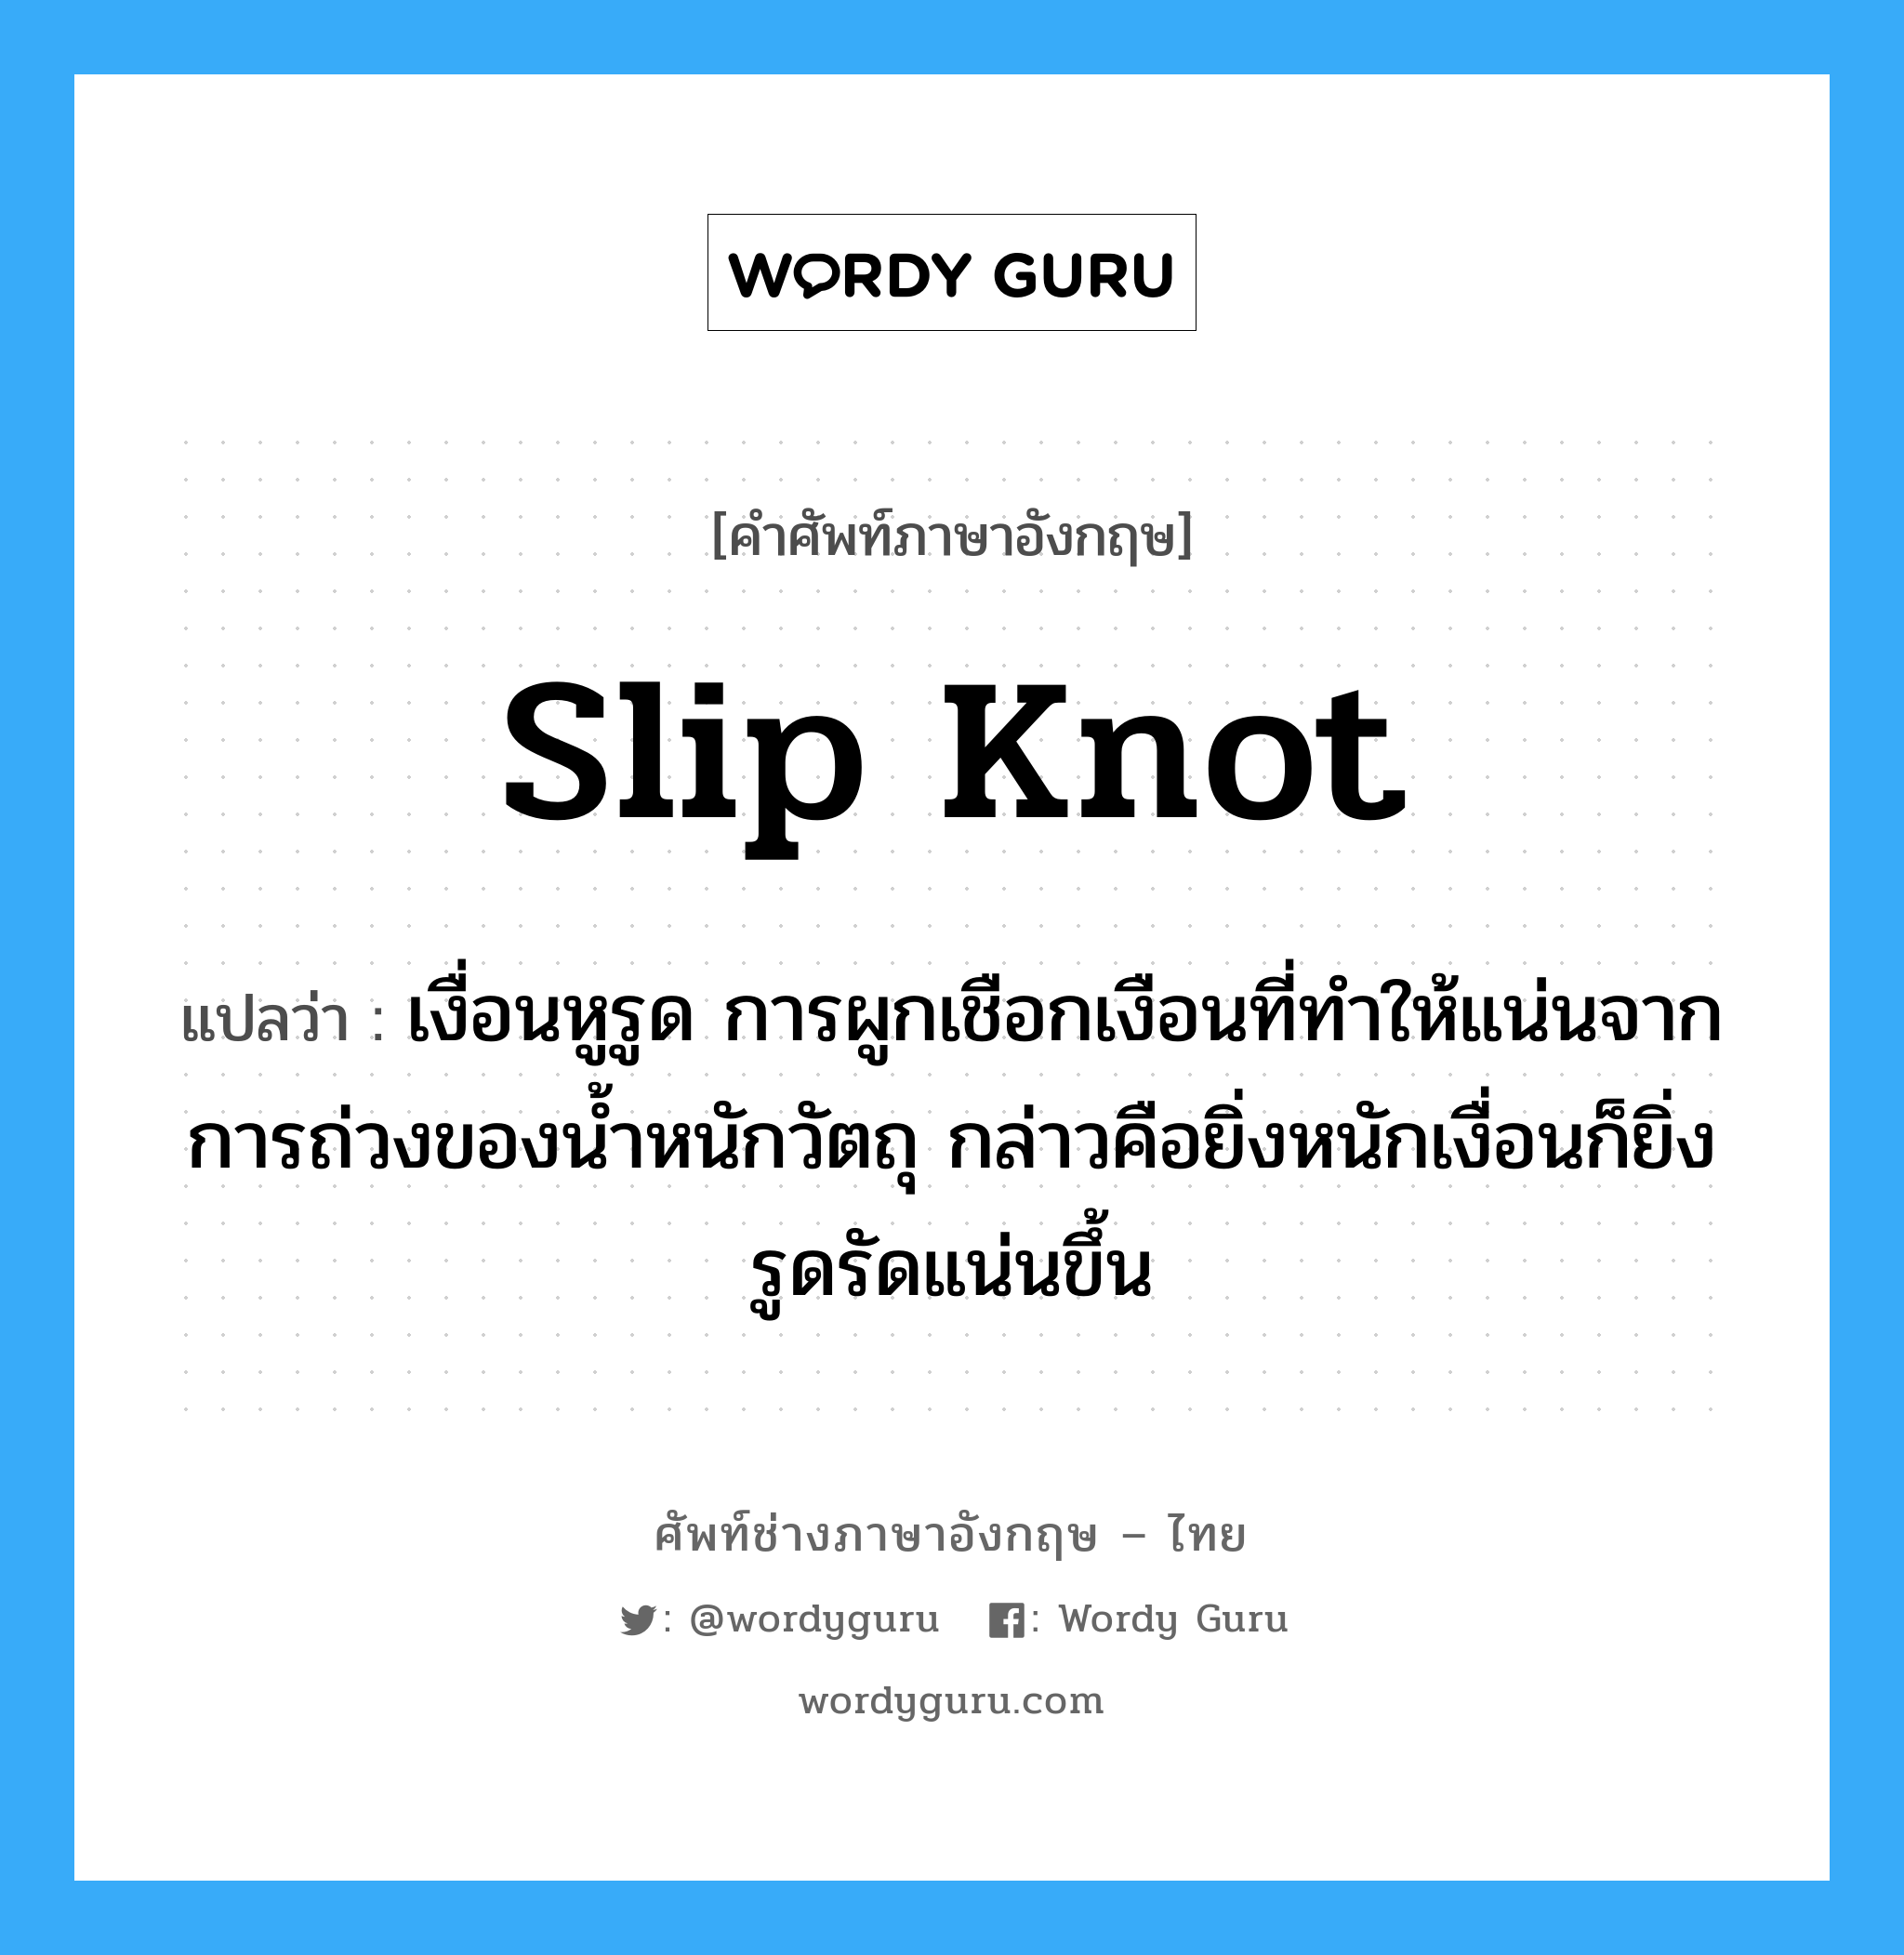 slip knot แปลว่า?, คำศัพท์ช่างภาษาอังกฤษ - ไทย slip knot คำศัพท์ภาษาอังกฤษ slip knot แปลว่า เงื่อนหูรูด การผูกเชือกเงือนที่ทำให้แน่นจากการถ่วงของน้ำหนักวัตถุ กล่าวคือยิ่งหนักเงื่อนก็ยิ่งรูดรัดแน่นขึ้น